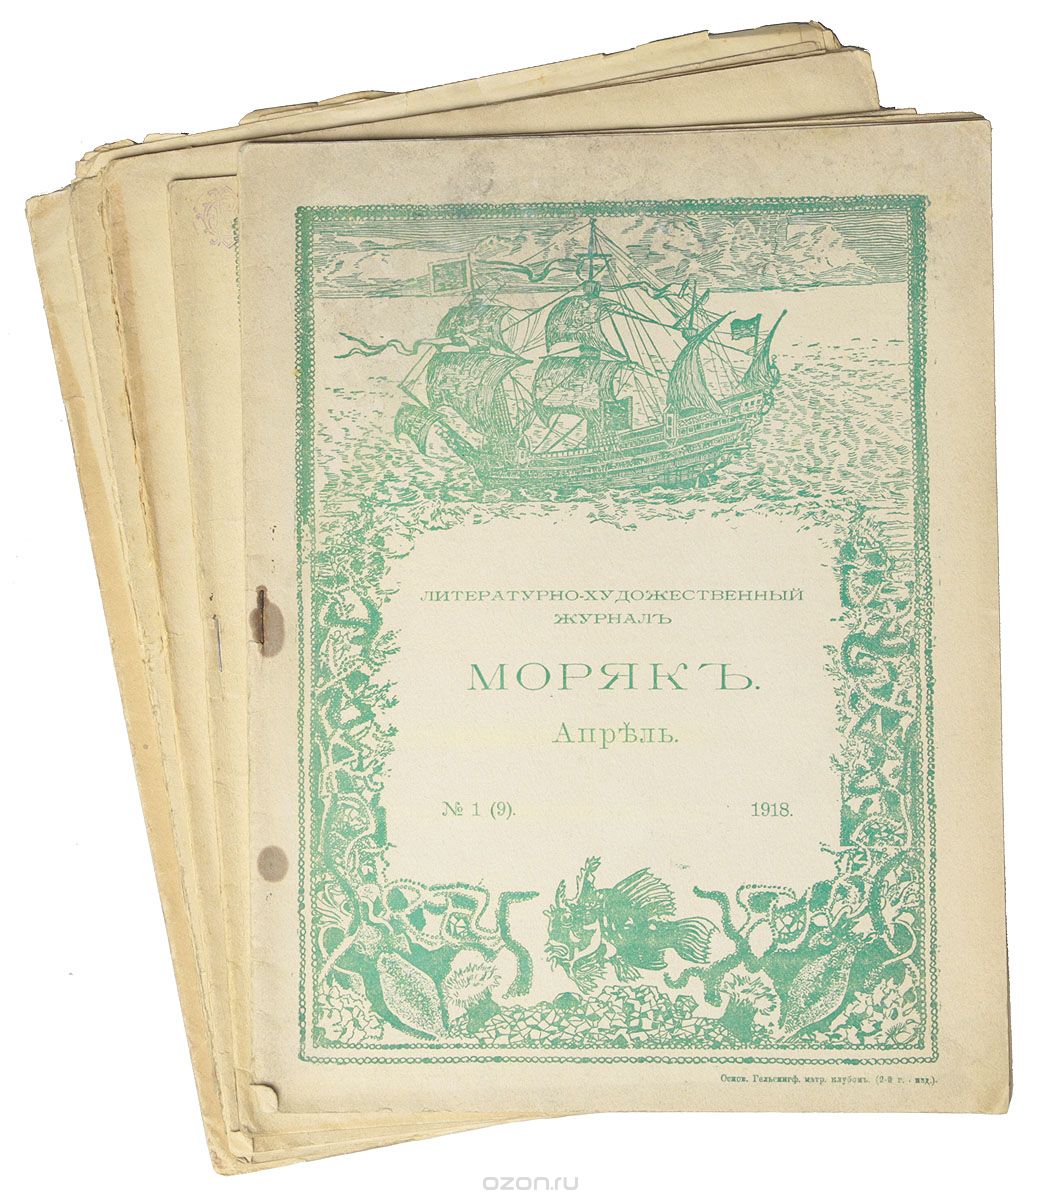 Литературно-художественный журнал "Моряк". Комплект из 5 выпусков за 1918 год